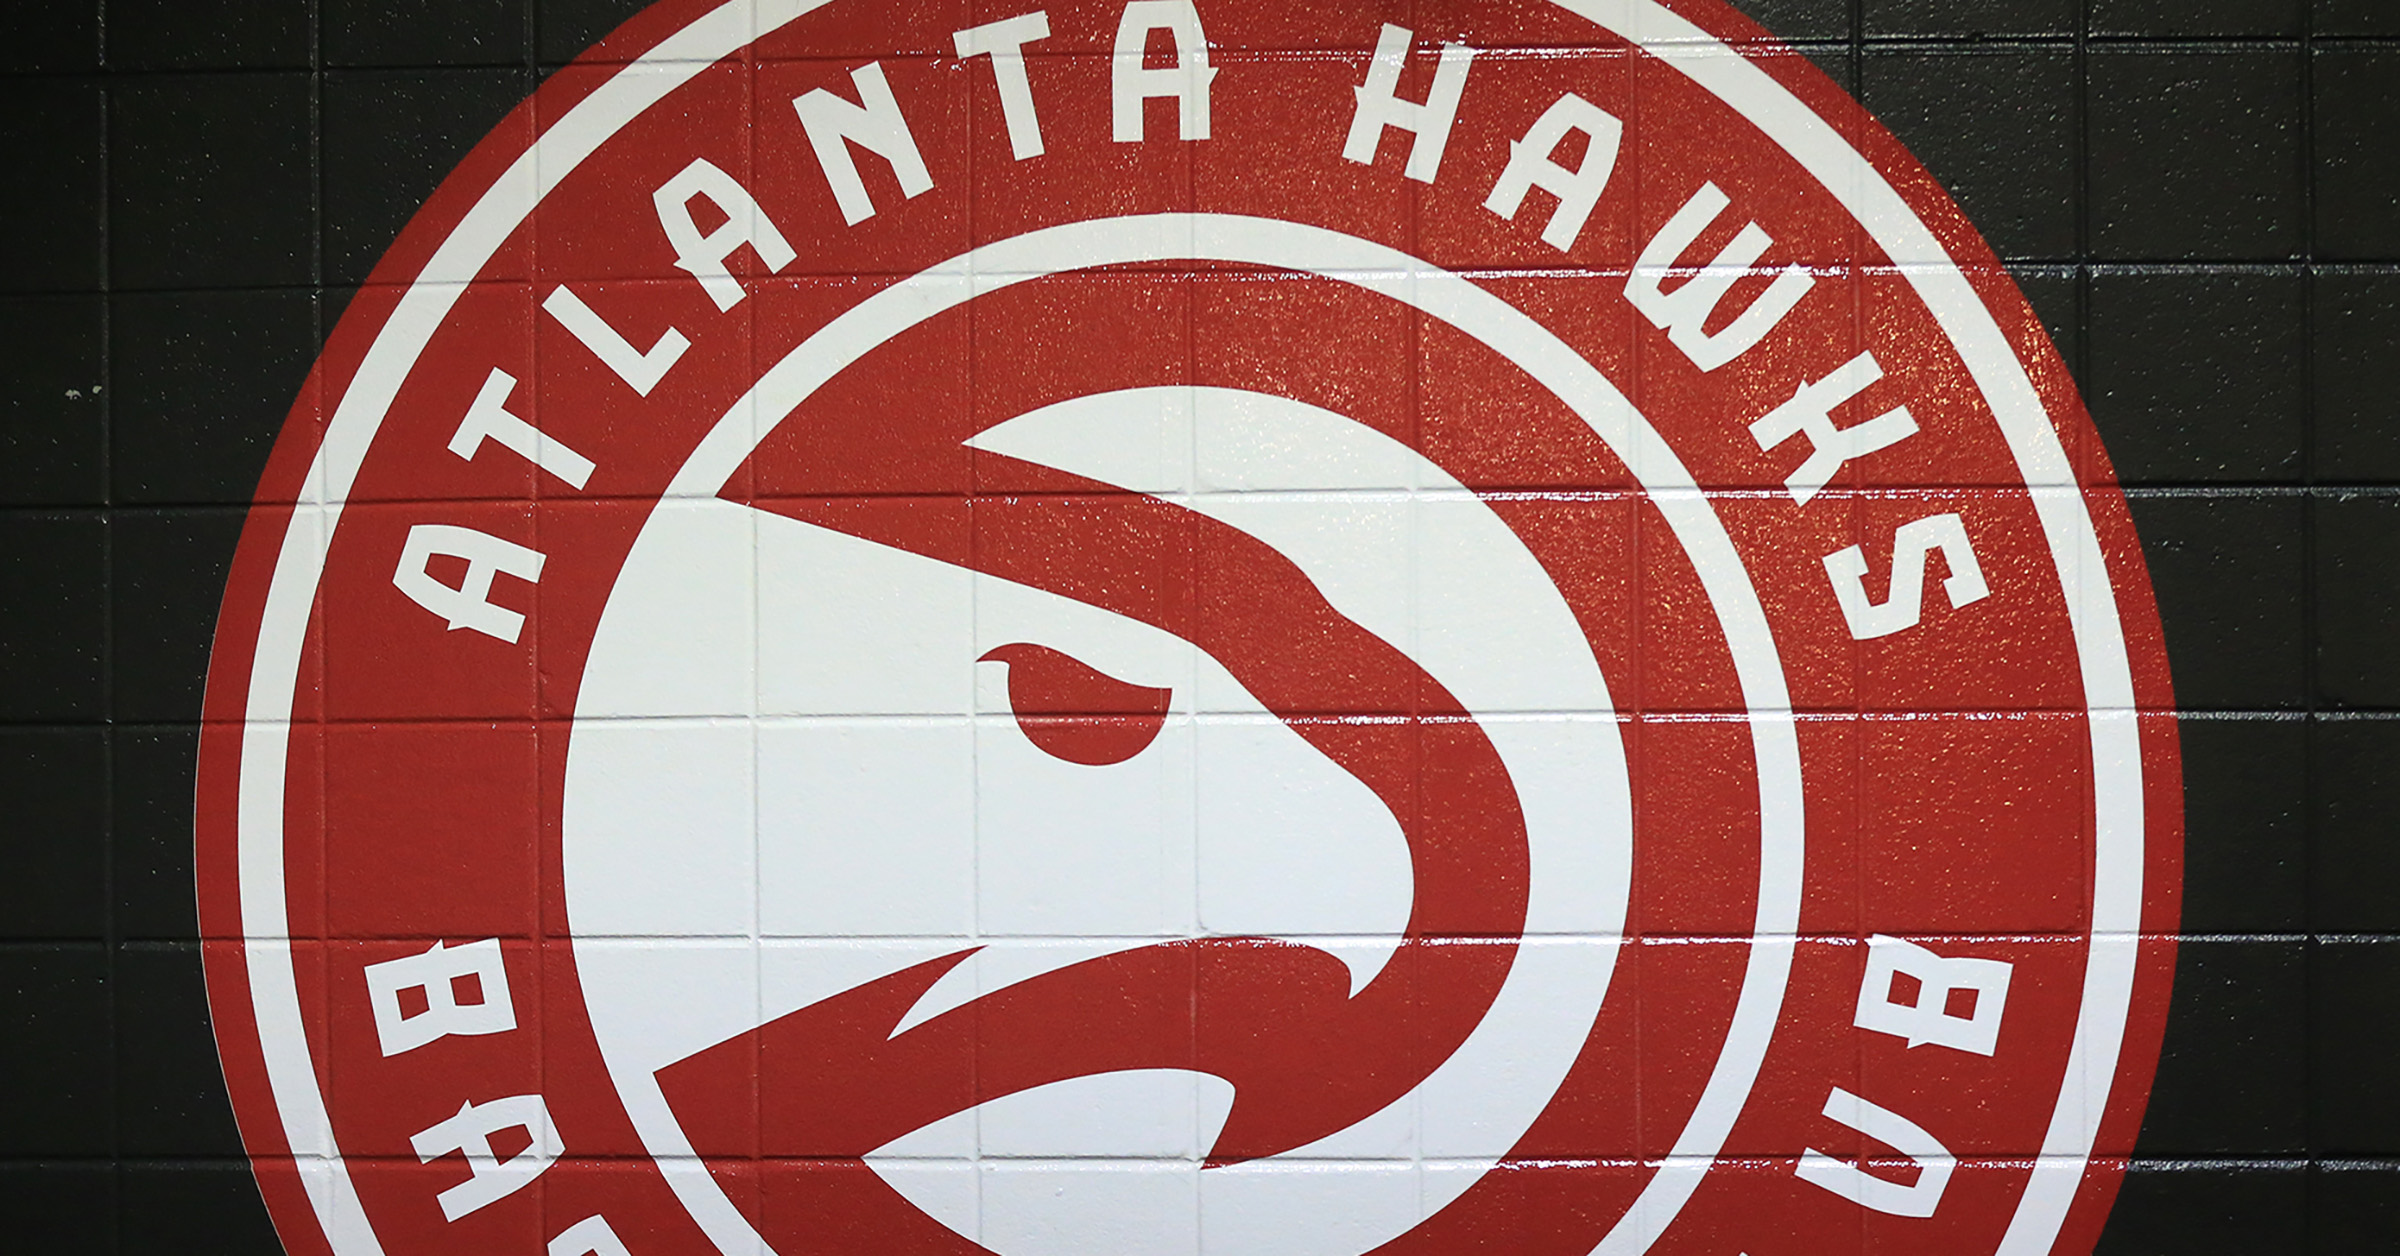 Atlanta Hawks No. 13 cheapest tickets on secondary market - Atlanta  Business Chronicle